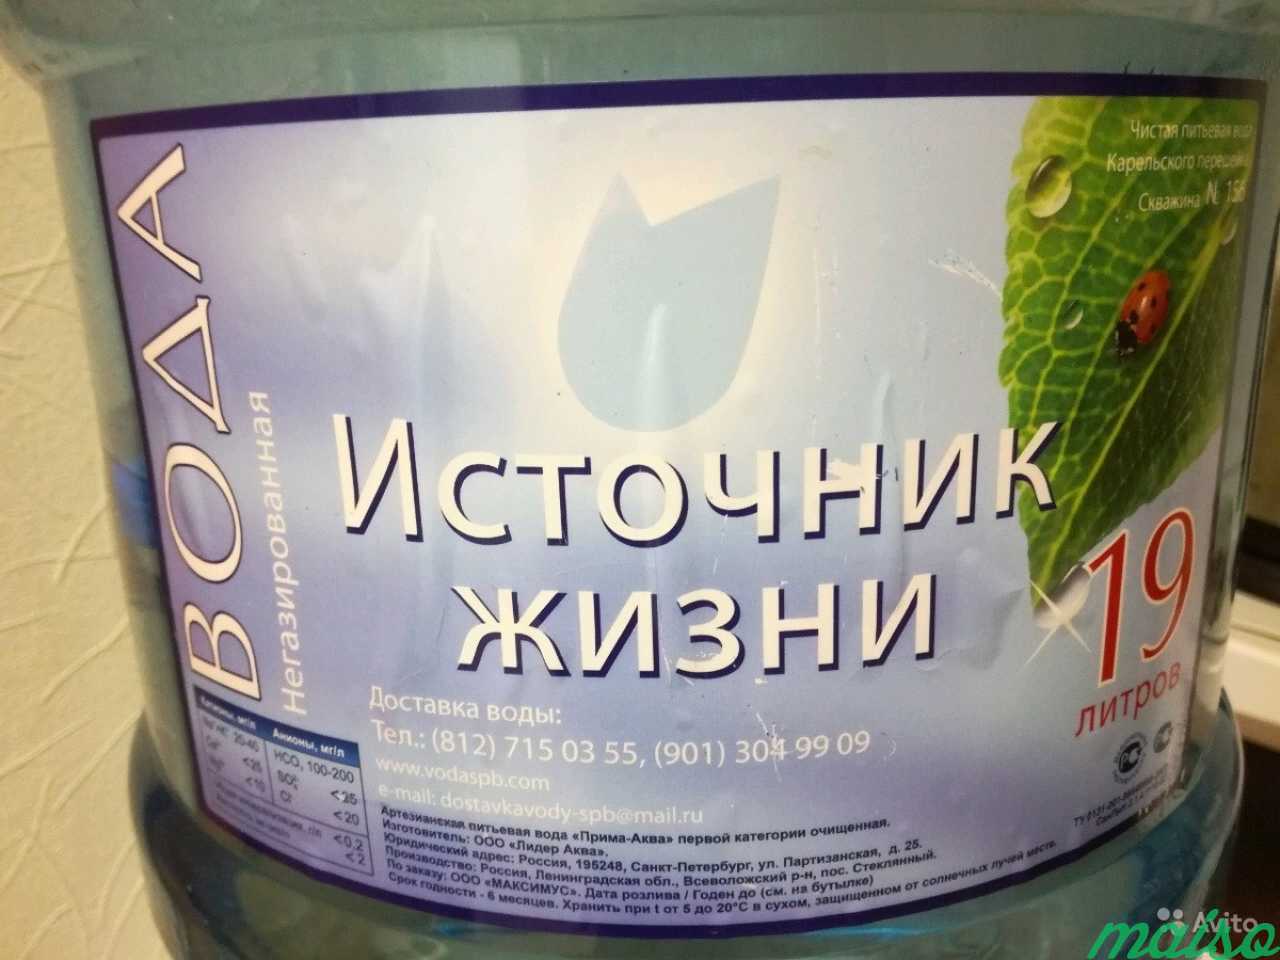 Питьевая вода 19 литров в Санкт-Петербурге. Фото 1